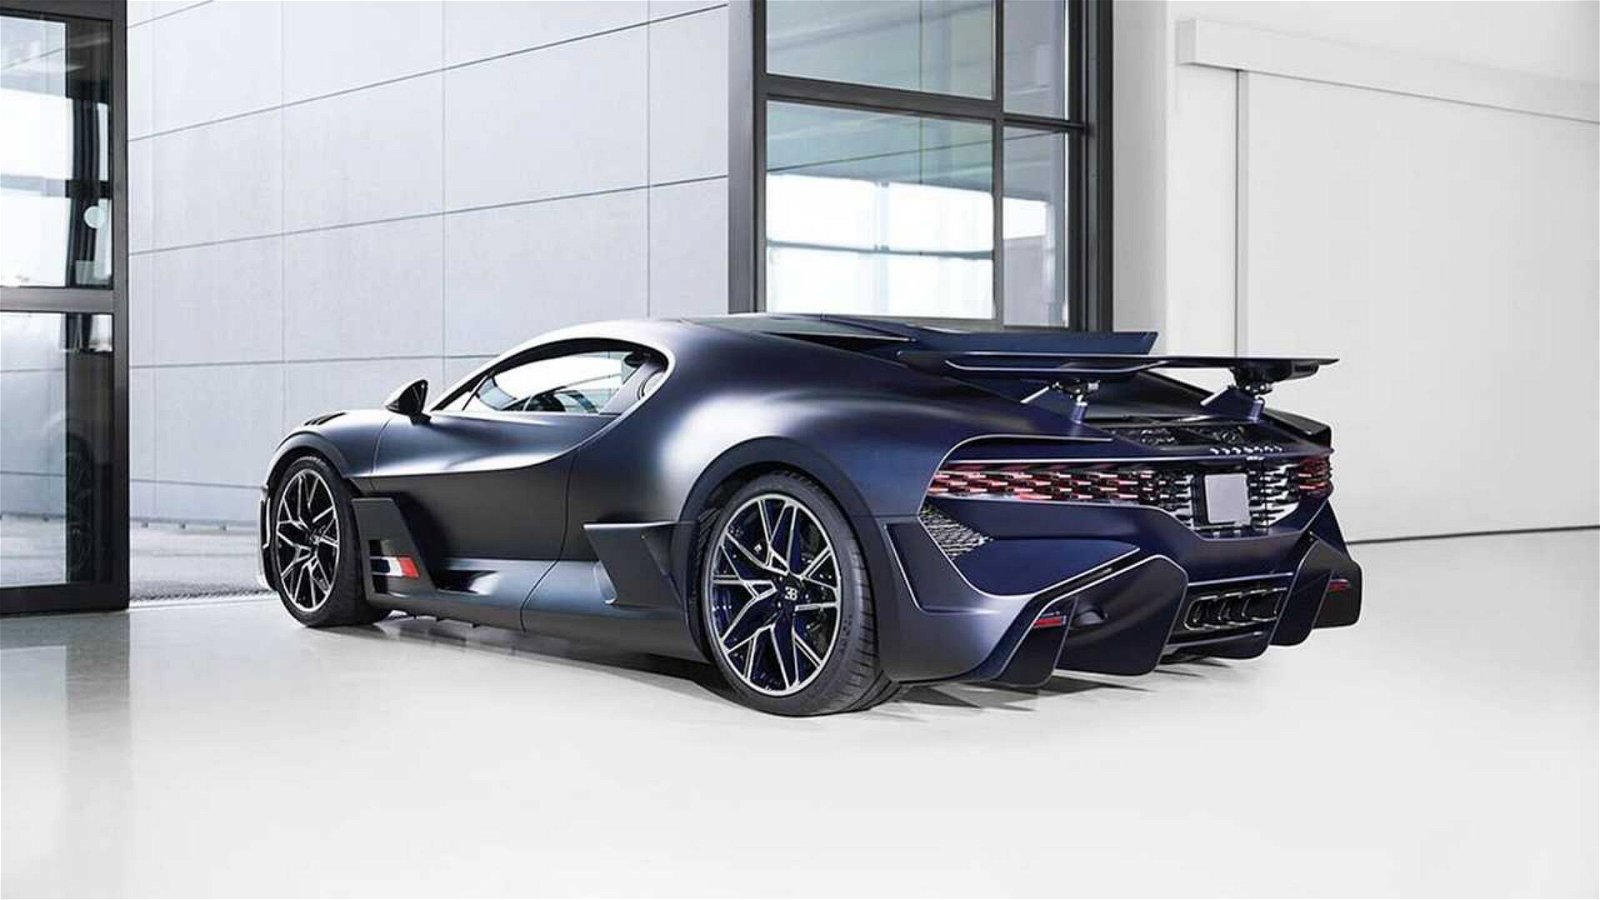 Immagine di Bugatti Divo: spettacolare, in fibra di carbonio blu opaco